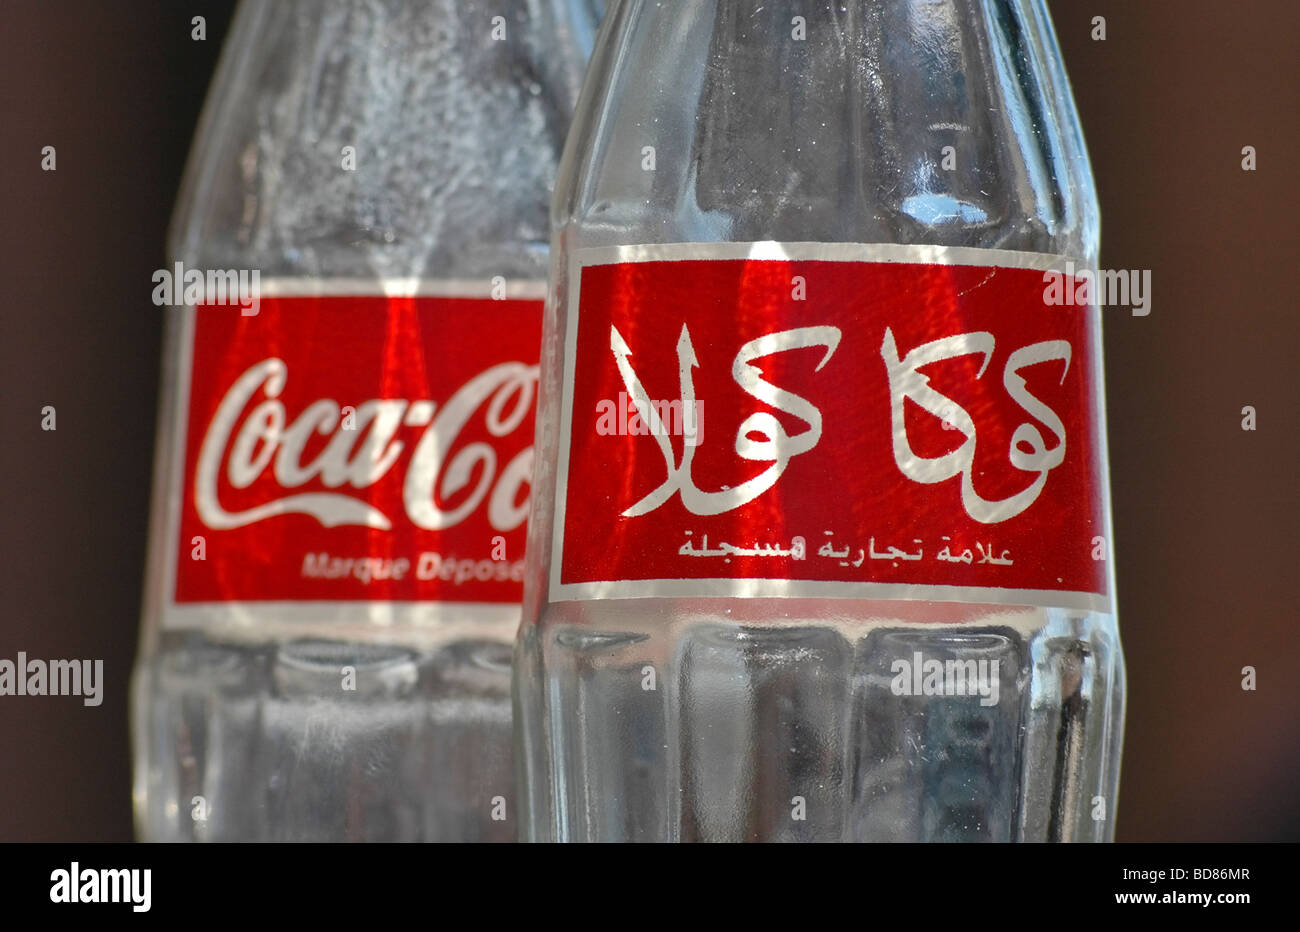 3 Coca Cola-Flaschen zeigt die englische und arabische Schreibweisen und Logos. Genommen in Marokko Stockfoto